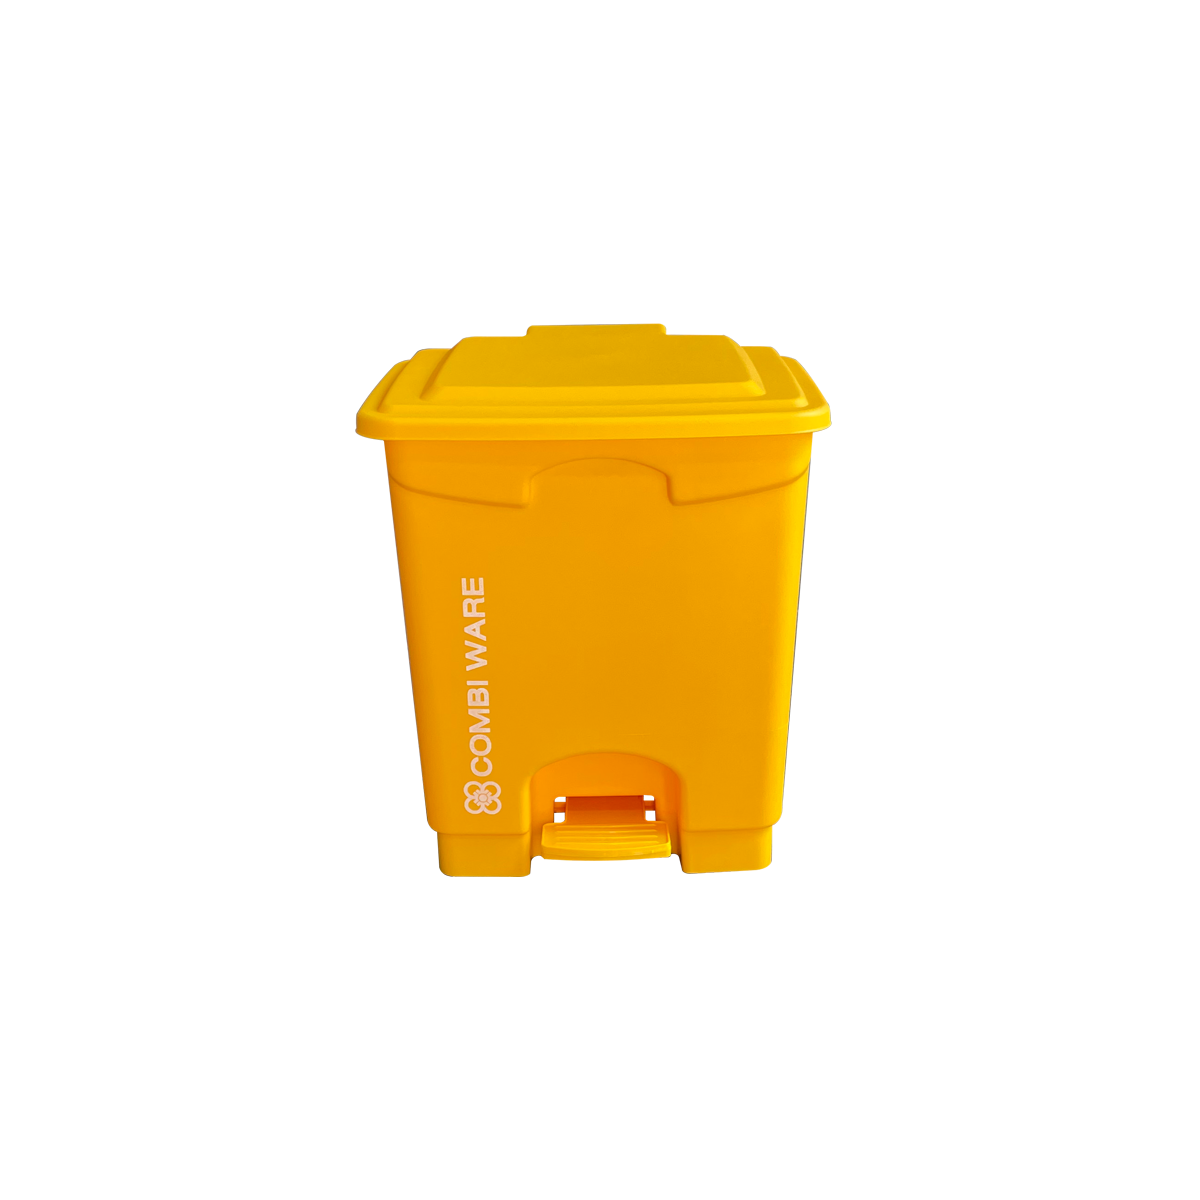 ถังขยะพลาสติก ขนาด 15 ลิตร แบบมีเท้าเหยียบ สีเหลือง